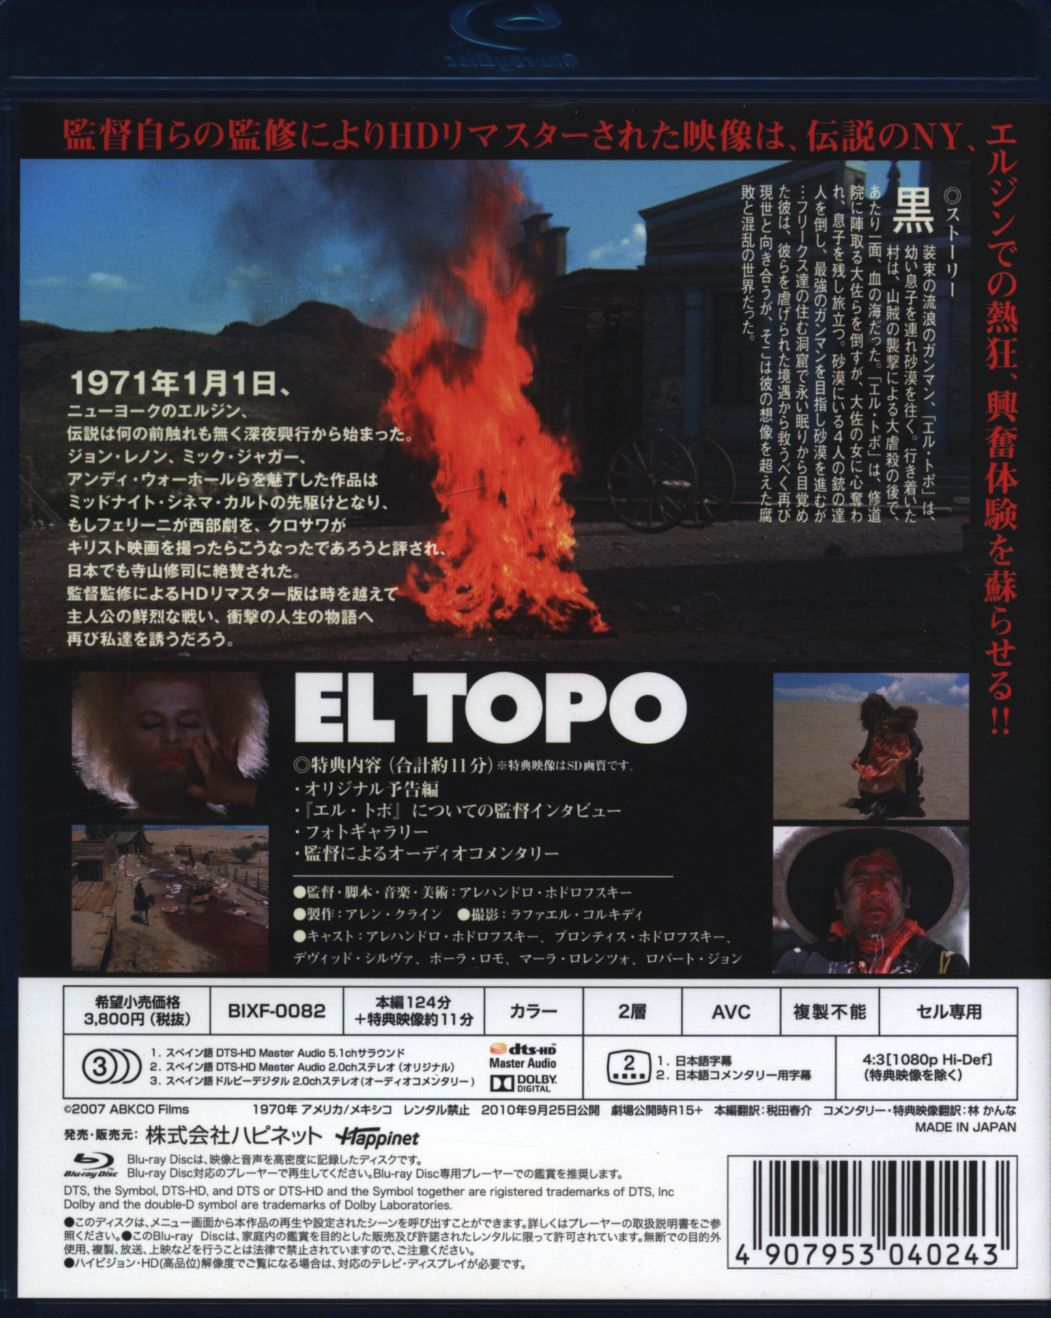 株価 エル・トポ HDリマスター版 Blu-ray | www.artfive.co.jp